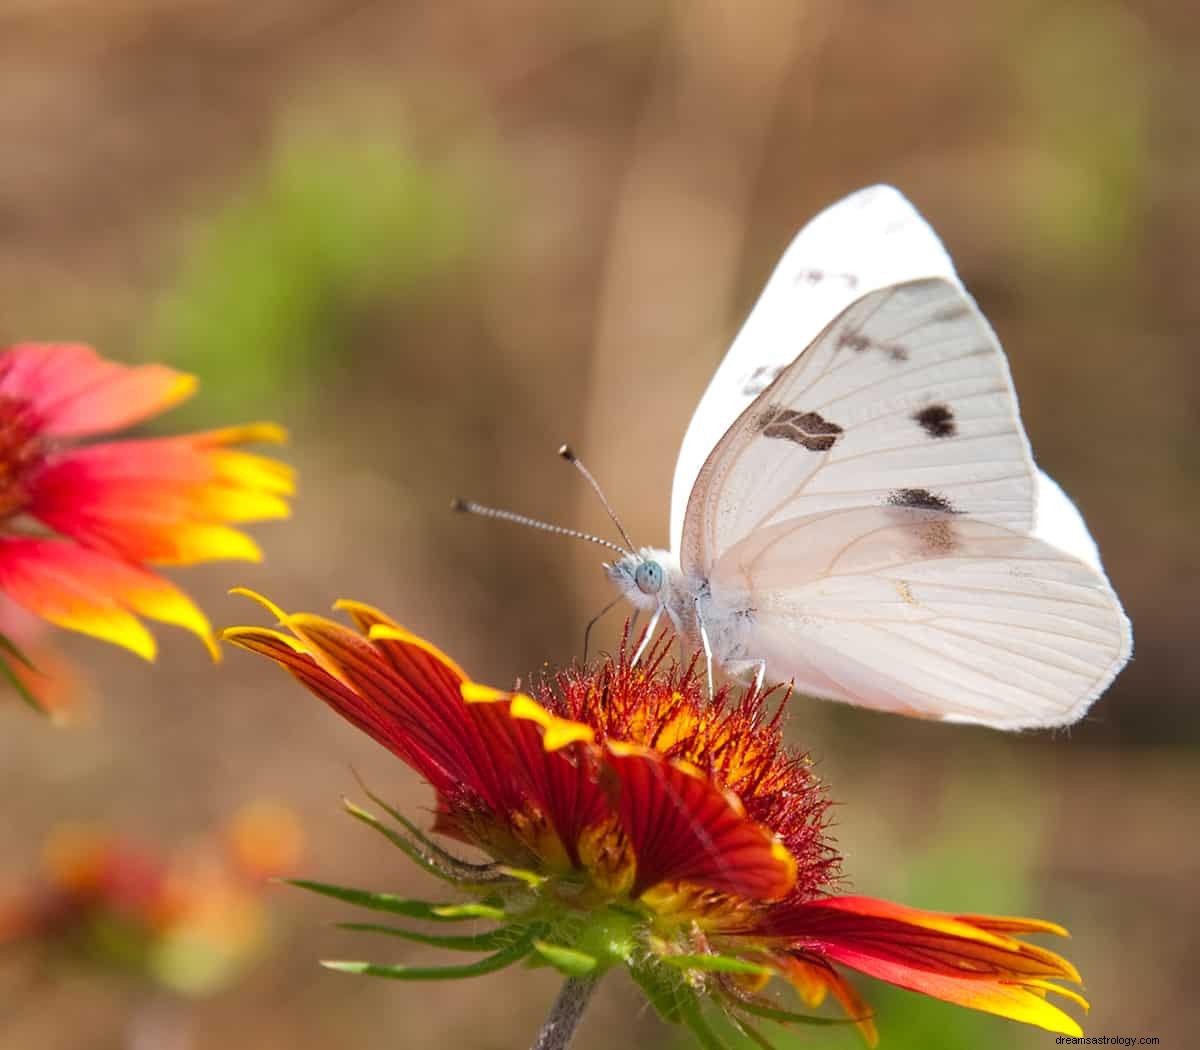 Sognare una farfalla:simbolismo e significato 